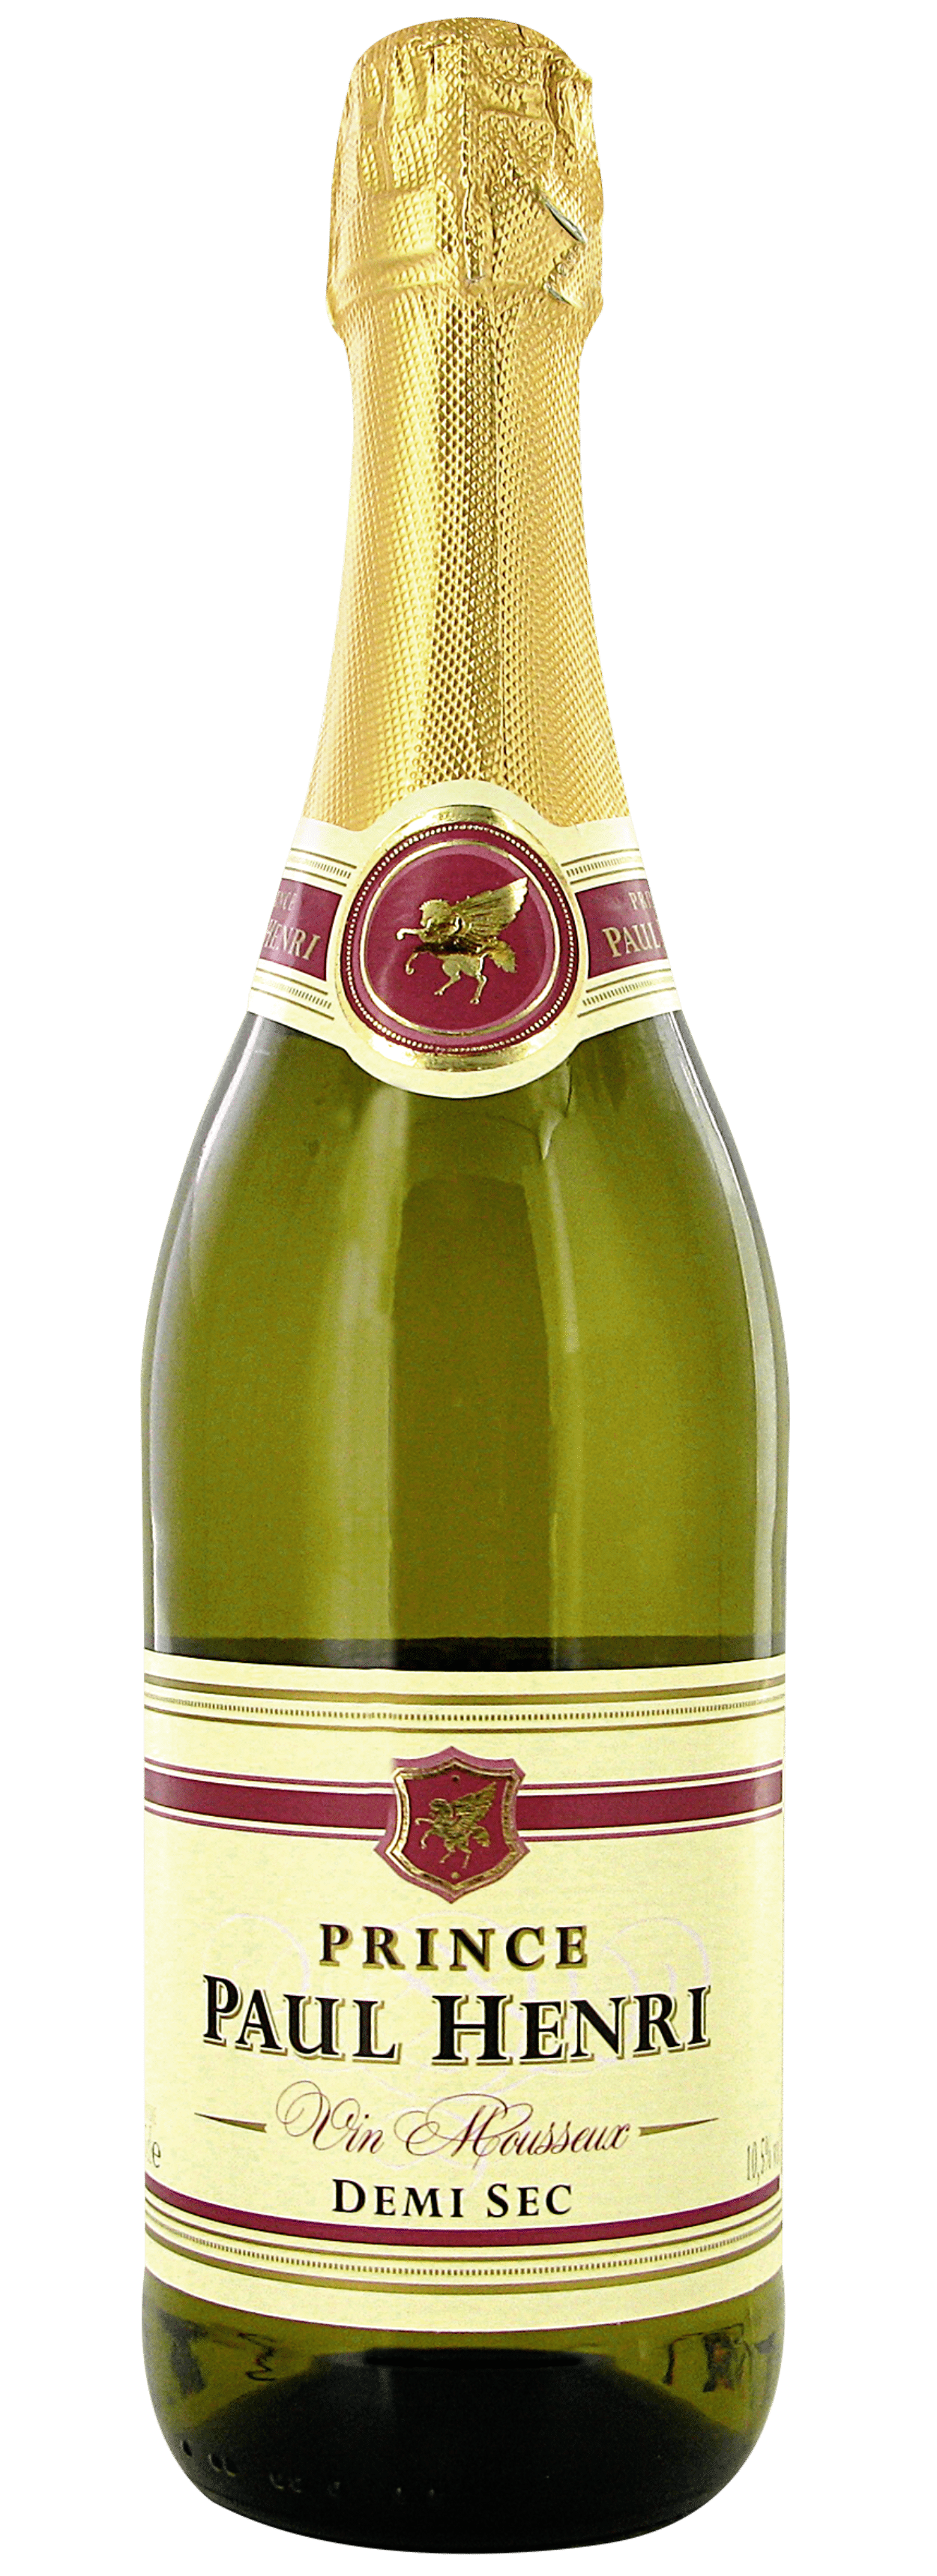 Le vin de glace, un vin rare et précieux - 02/02/2022 10:00 - Woowine